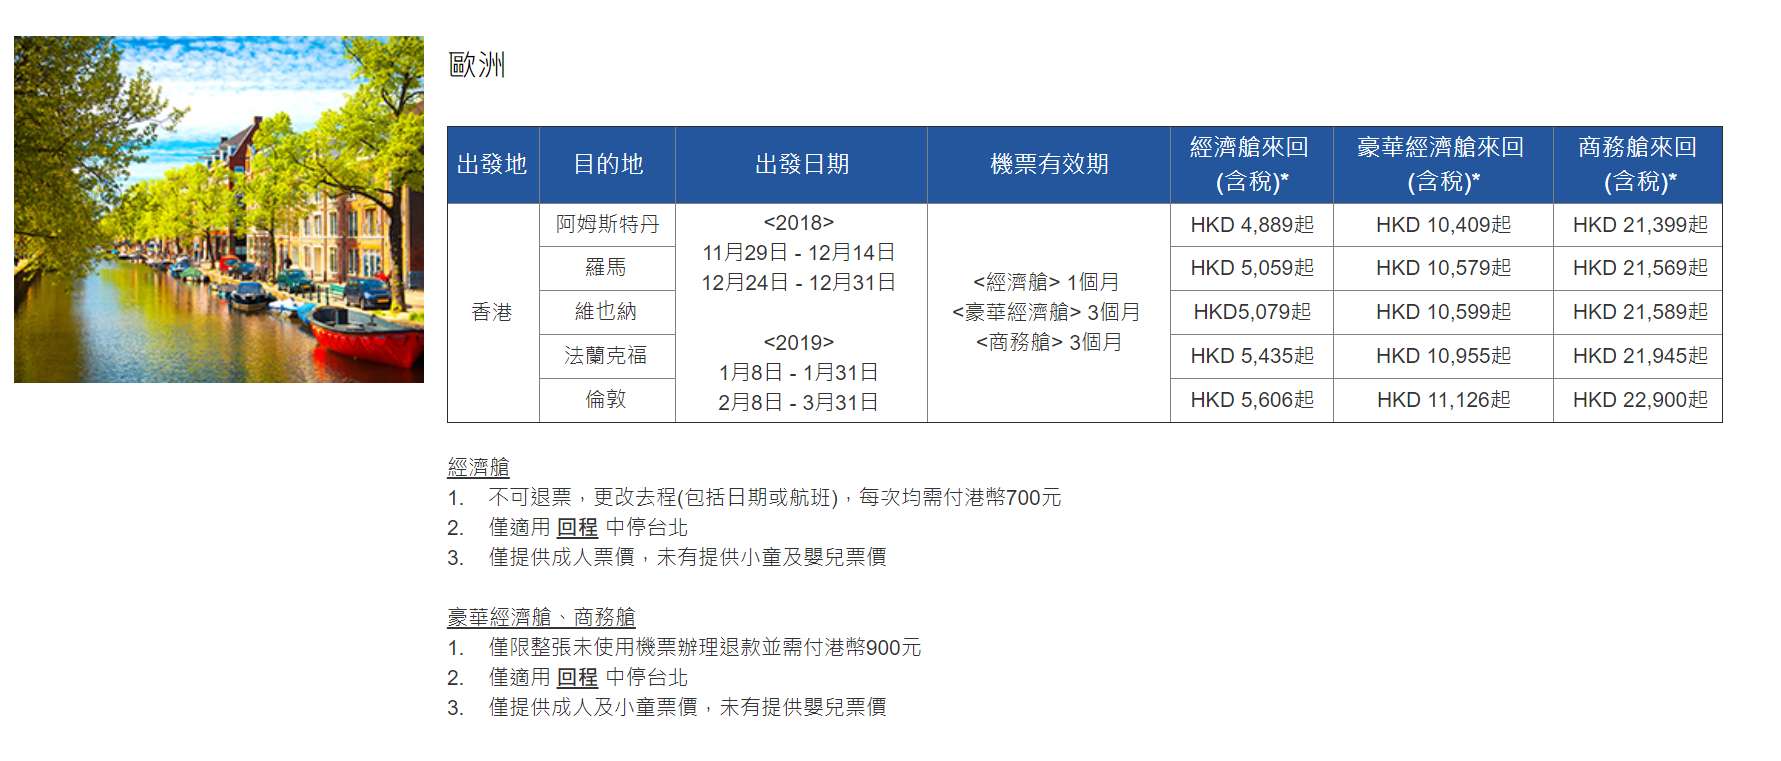 中華航空低至67限時機票優惠(至18年12月4日)圖片4